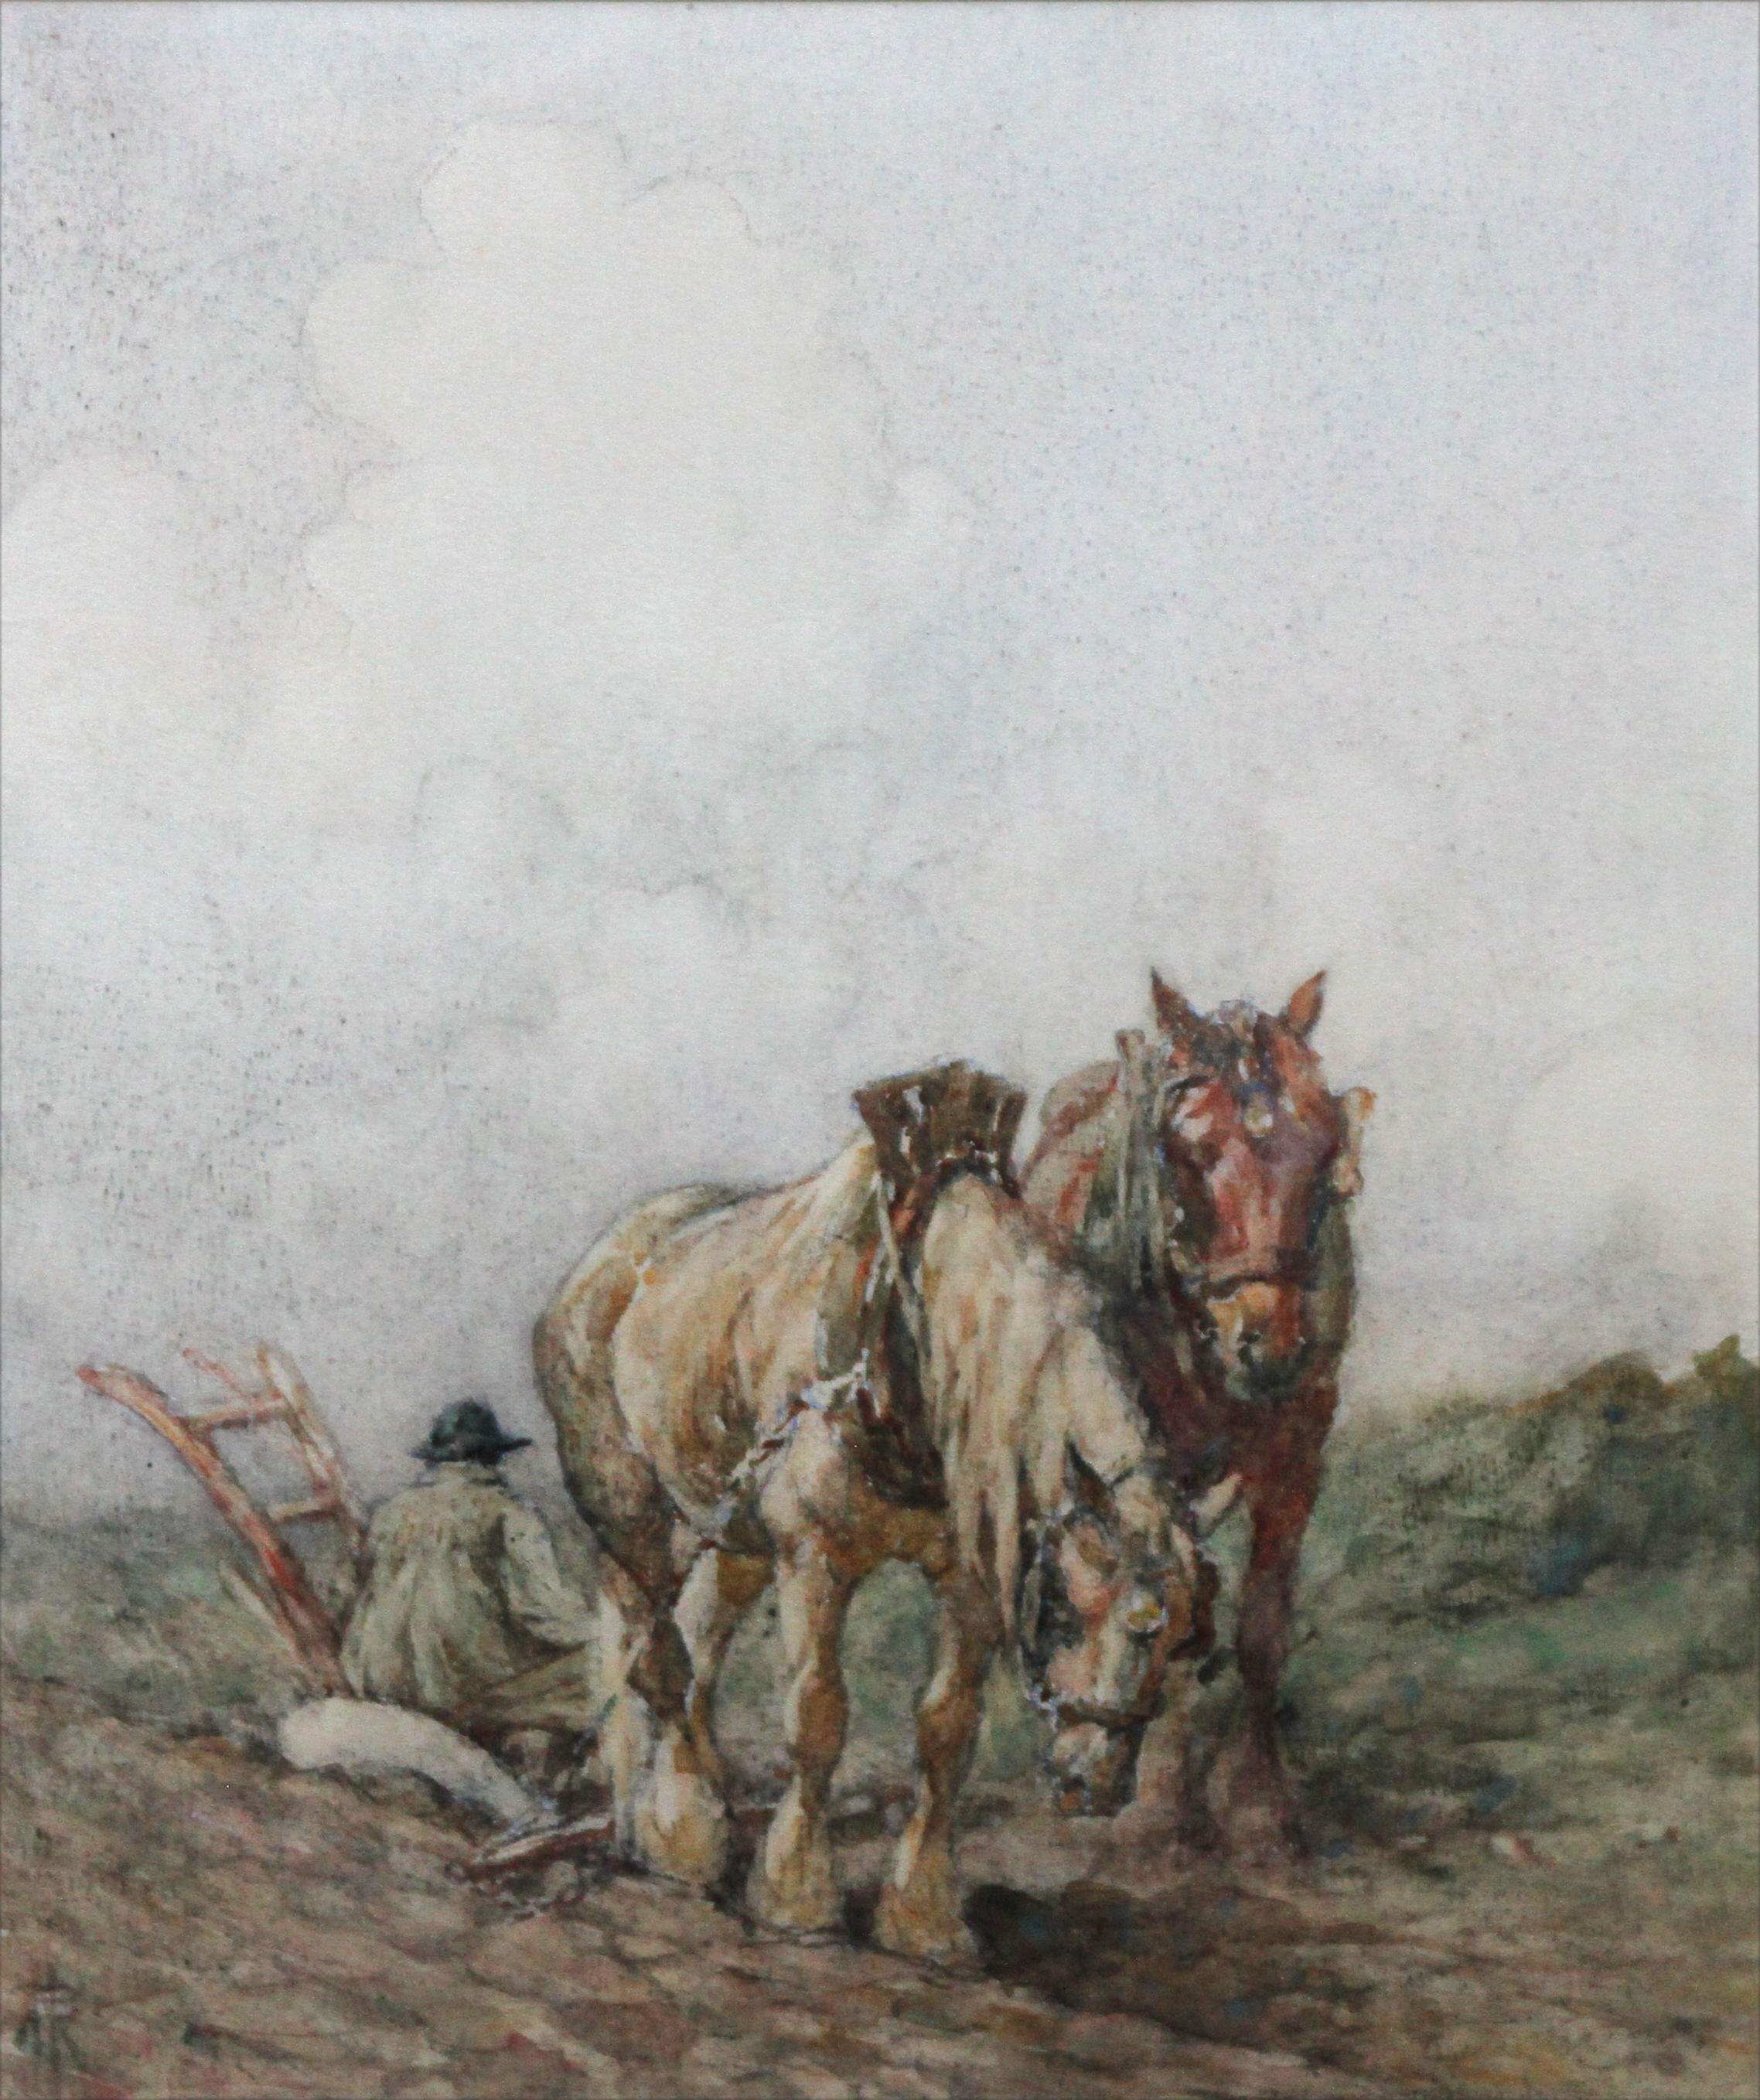 Dieses schöne Aquarell des schottischen Impressionismus stammt von dem bekannten Tier- und Pferdemaler Nathaniel Hughes John Baird. Es wurde um 1900 gemalt und zeigt ein Pfluggespann und einen Bauern, der auf dem Gipfel eines Hügels ruht. Der Bauer